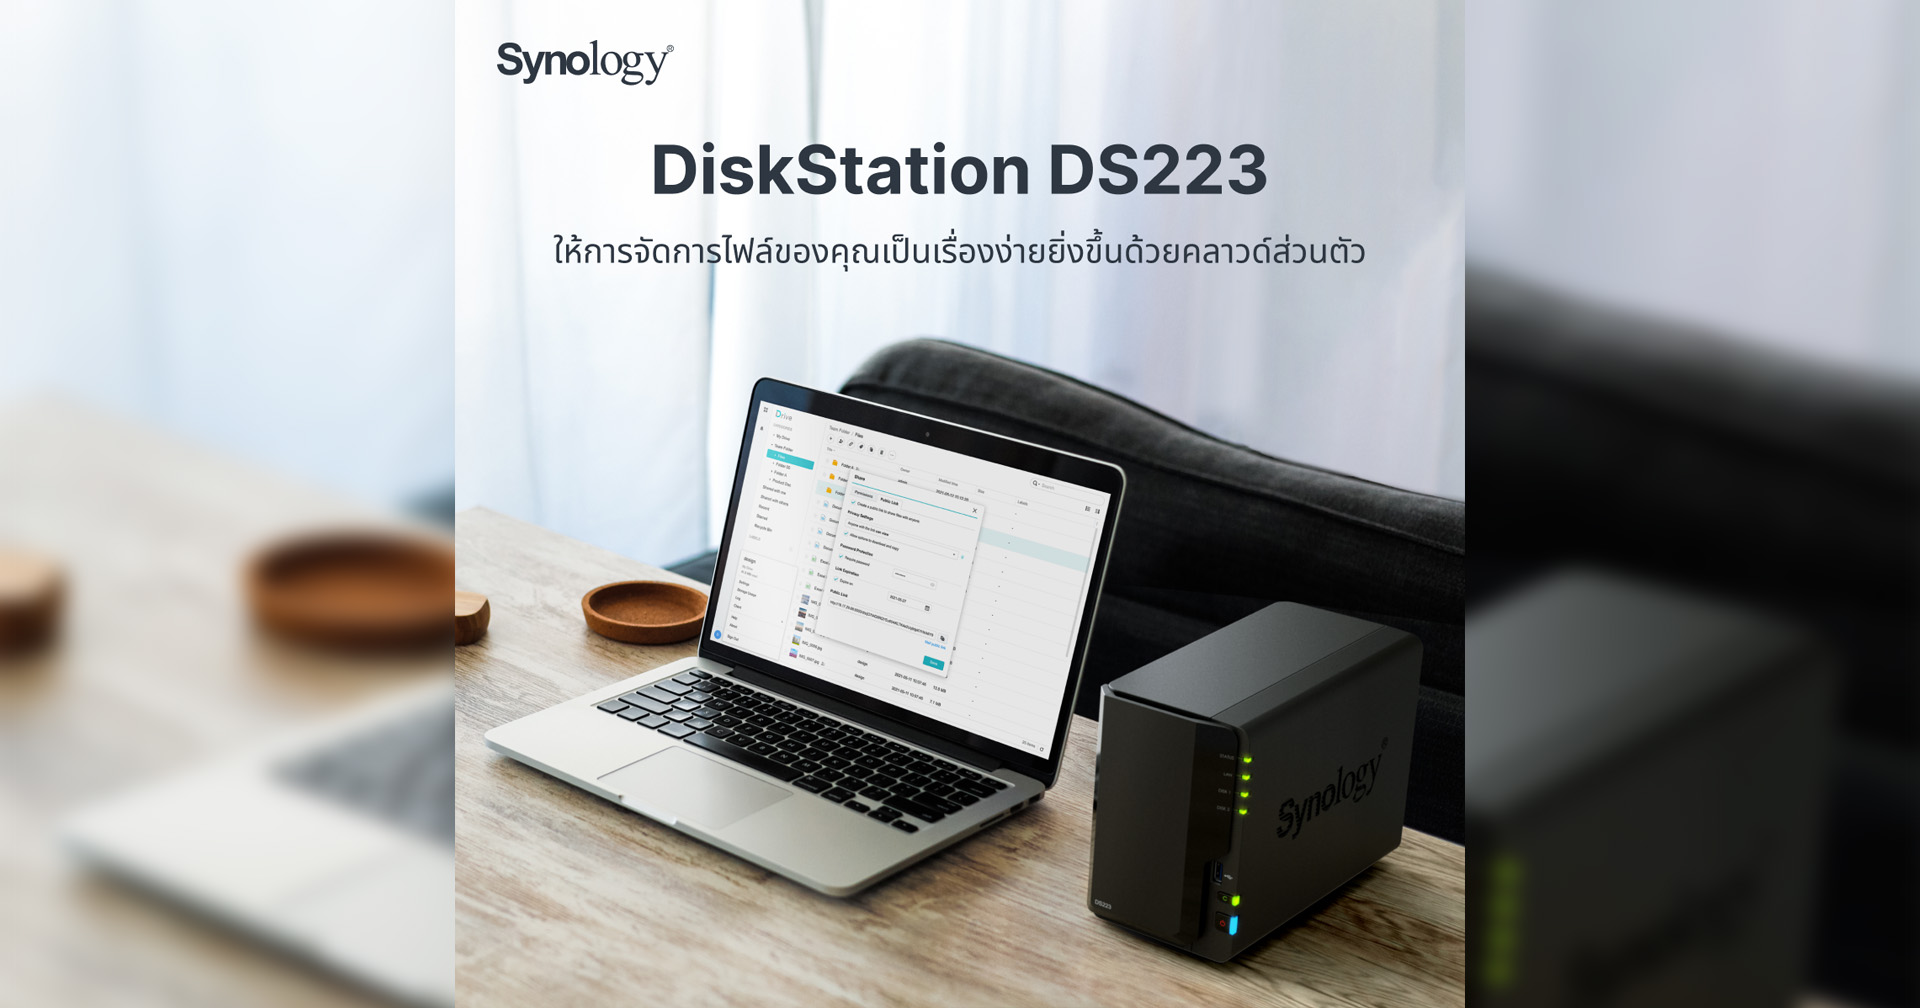 Synology ® DiskStation DS223 แพลตฟอร์มการจัดการข้อมูลสำหรับบ้านและสำนักงานขนาดเล็ก